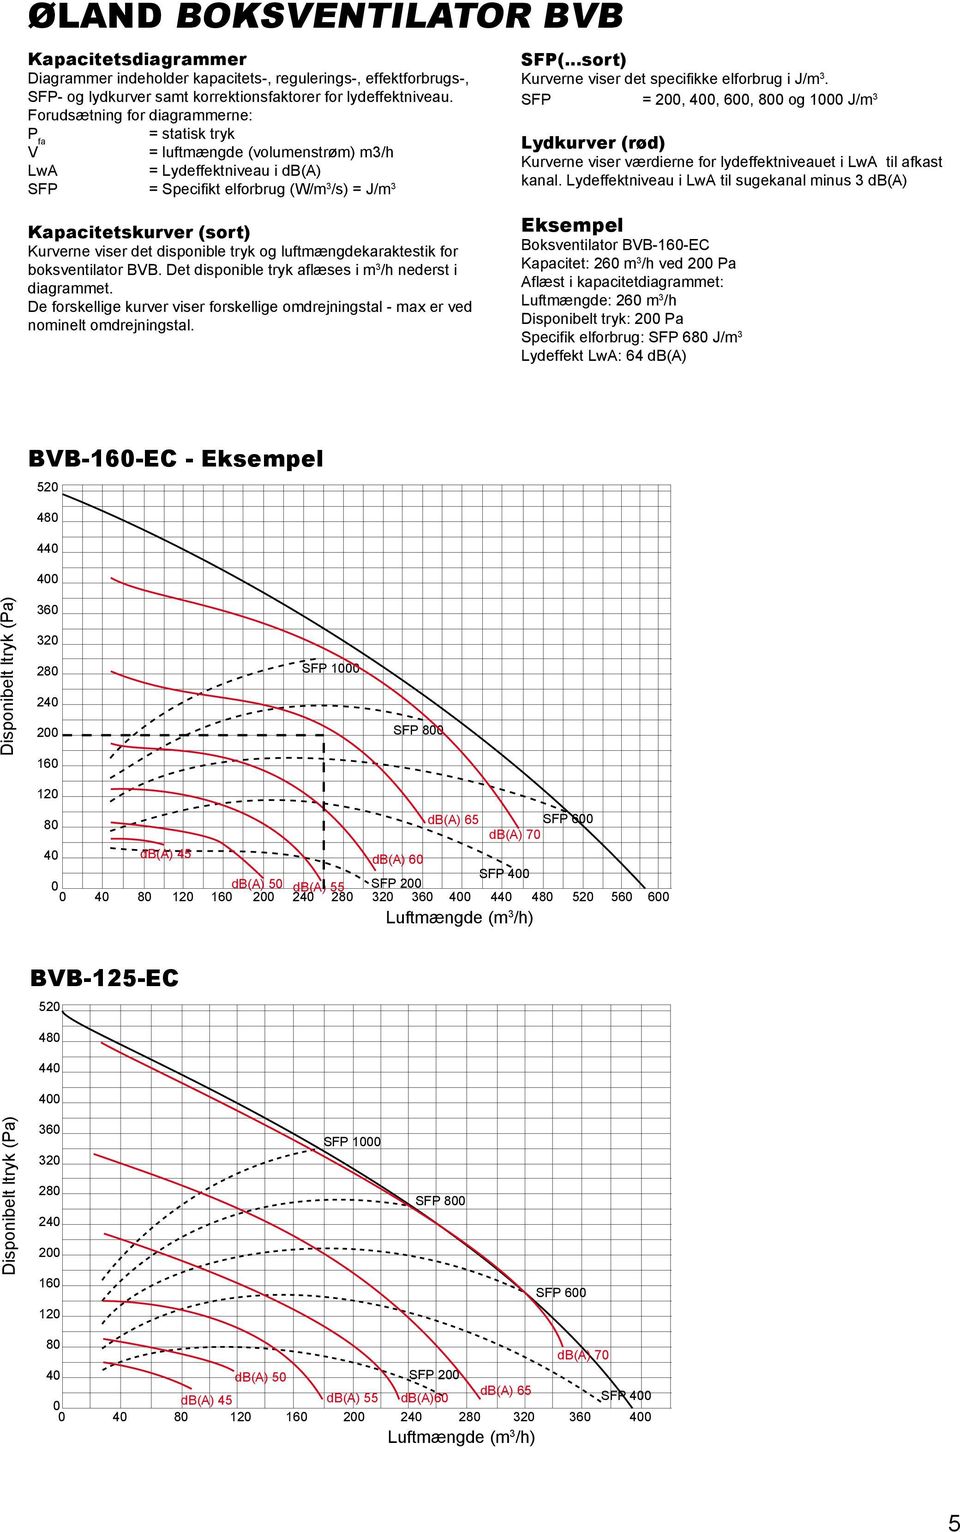 ..sort) Kurverne viser det specifikke elforbrug i J/m 3. SFP = 2, 4, 6, 8 og 1 J/m 3 Lydkurver (rød) Kurverne viser værdierne for lydeffektniveauet i LwA til afkast kanal.